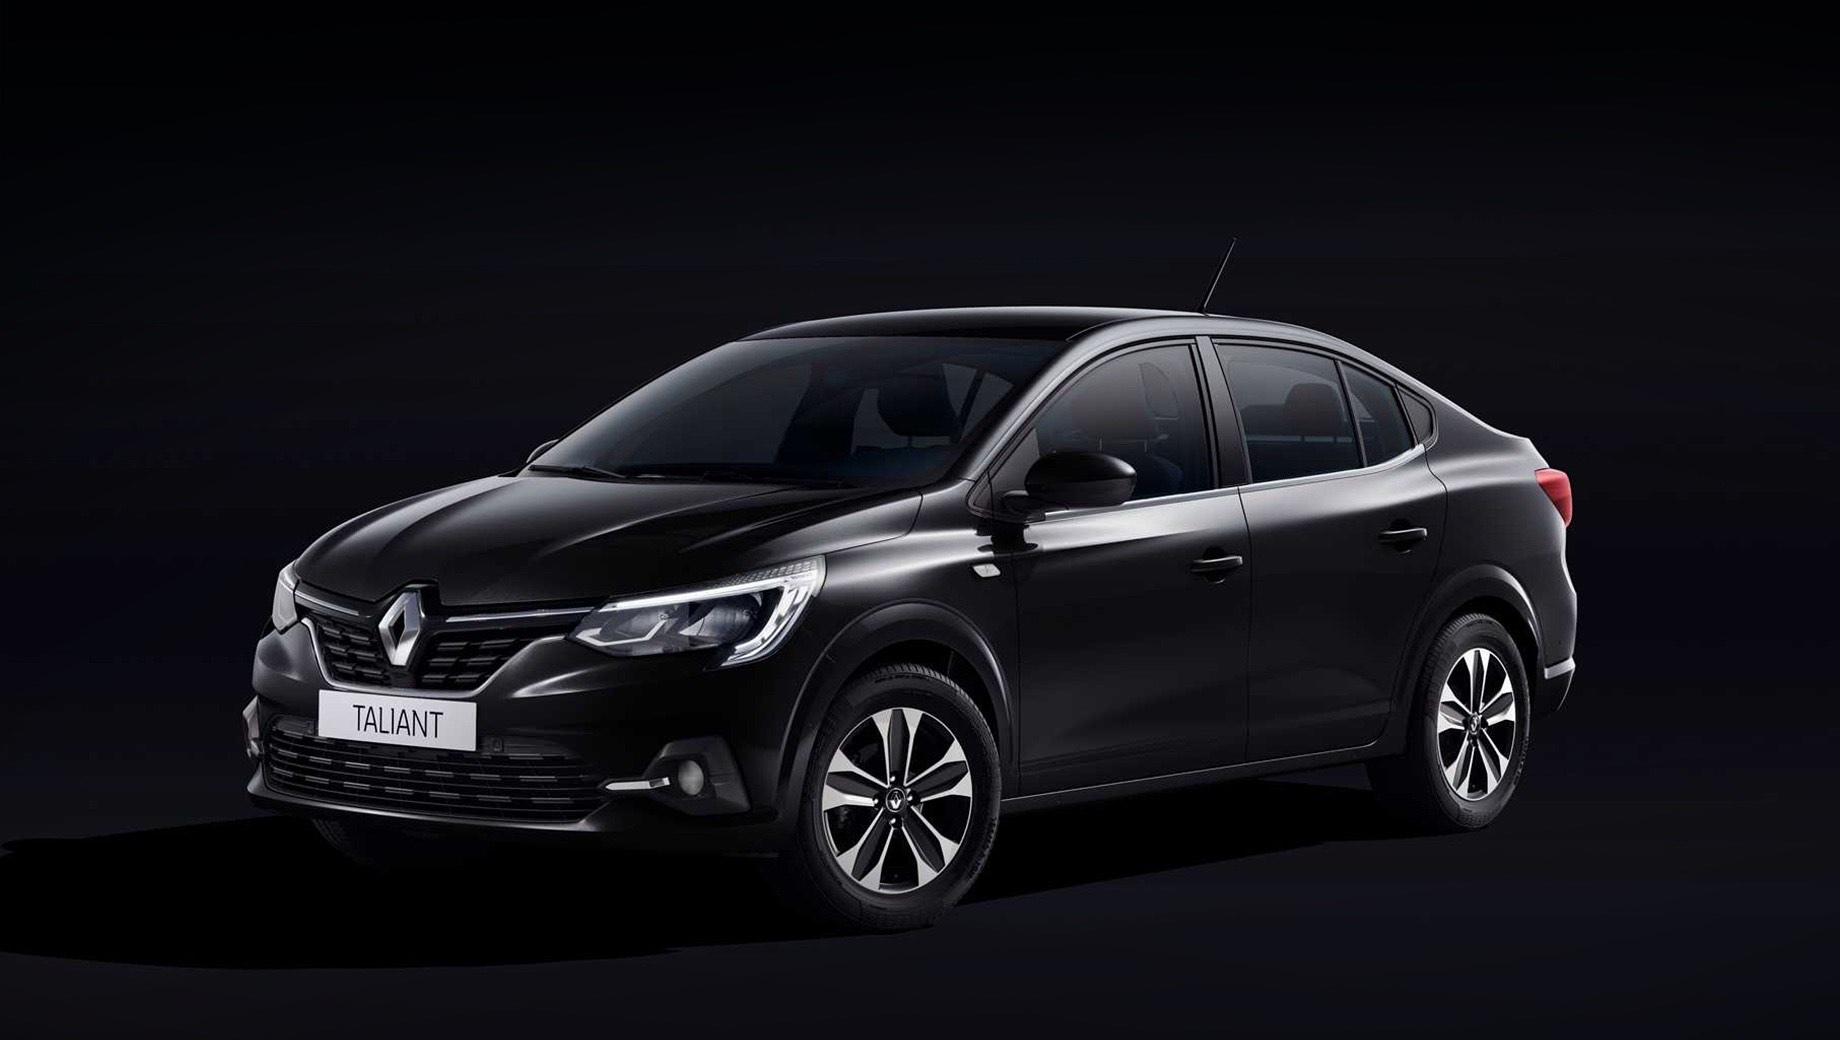 Renault taliant. Предположительно, Renault Taliant получит бензиновый трёхцилиндровый турбомотор 1.0 TCe и наддувную дизельную «четвёрку» 1.5 dCi. На том же Renault Clio эти агрегаты выдают 90–100 и 85 л.с. соответственно.